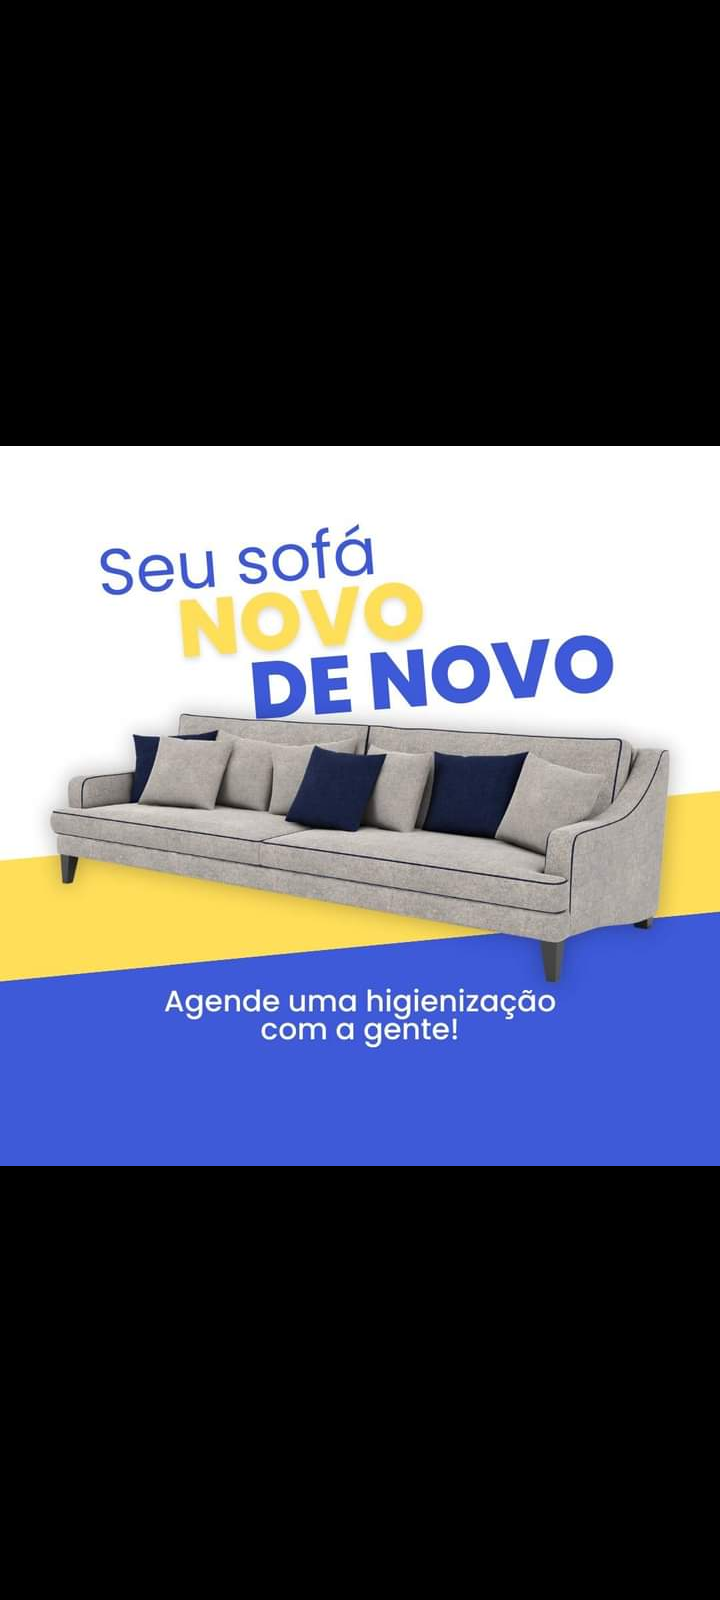 SOS estofos limpeza de sofás colchões carpetes tapetes e afins - Coimbra - Limpeza de Colchão